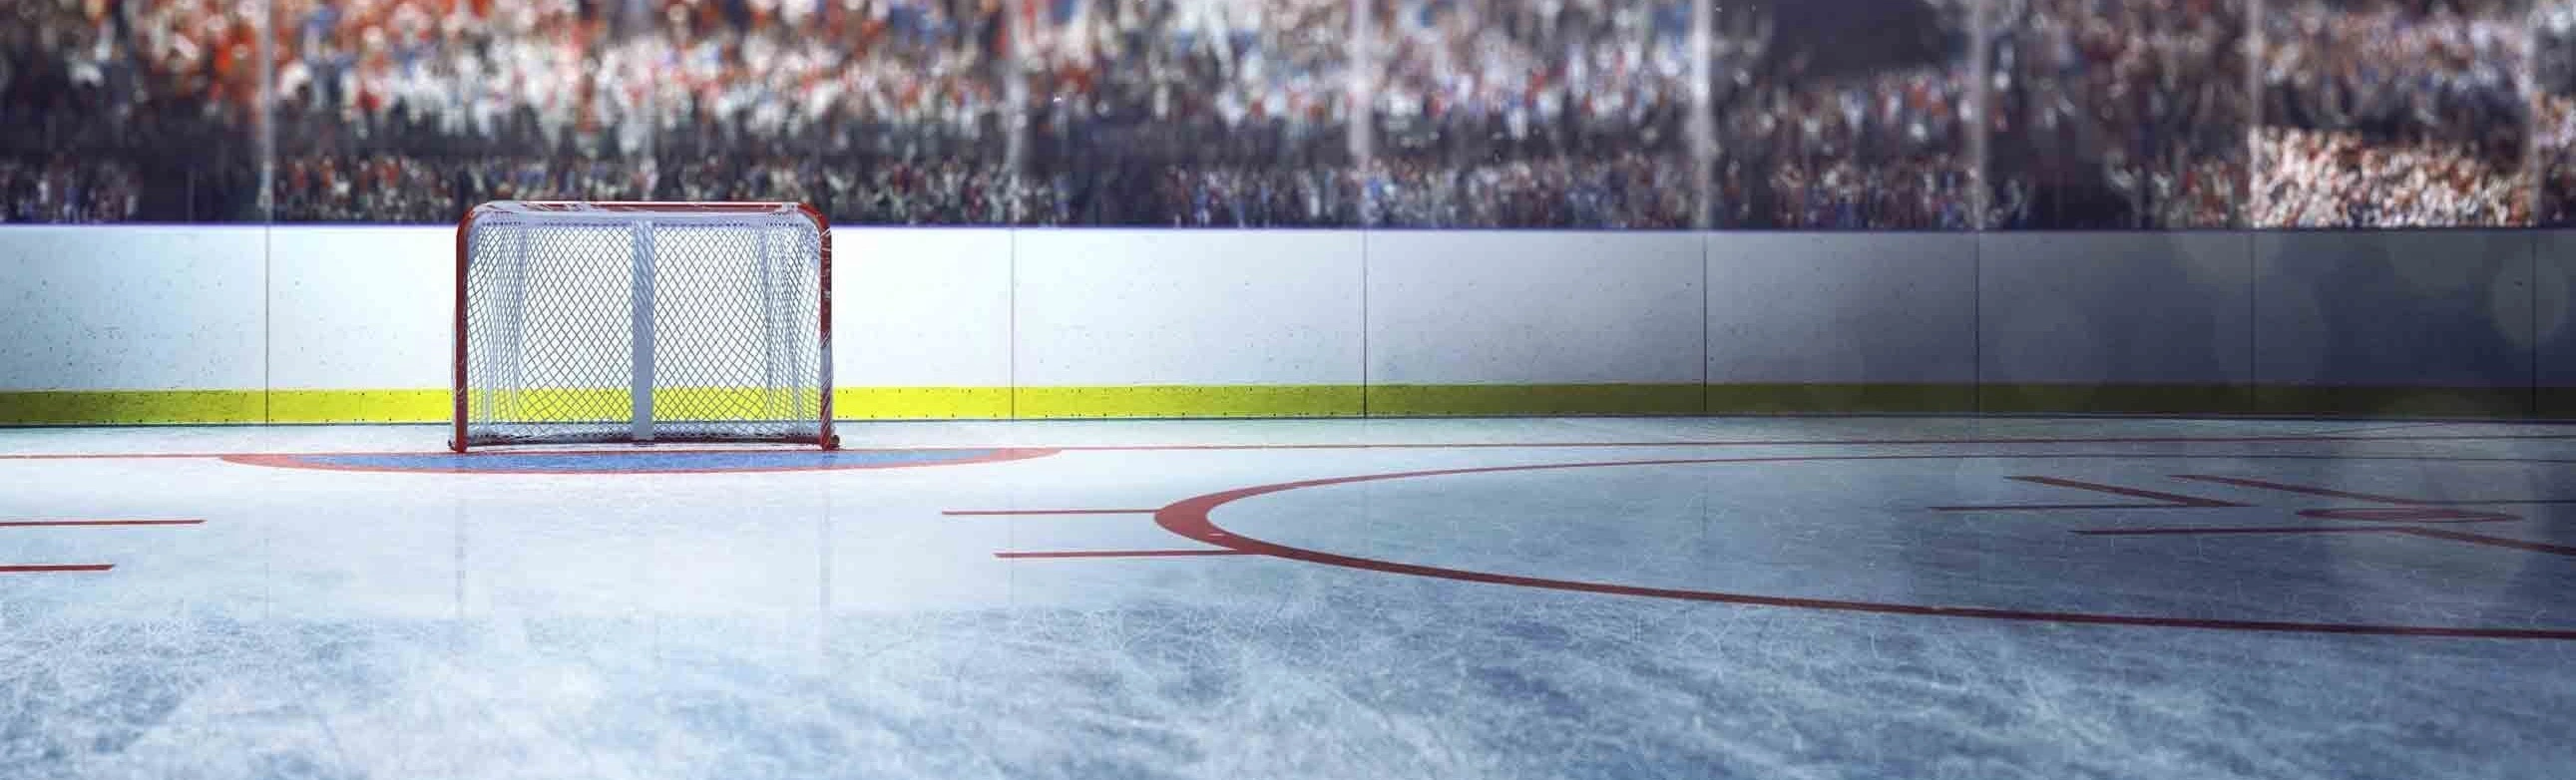 Зов битвы на льду: Болельщики хоккея, готовьтесь к грандиозному матчу "Сибирские Снайперы" - "Омские ястребы"!